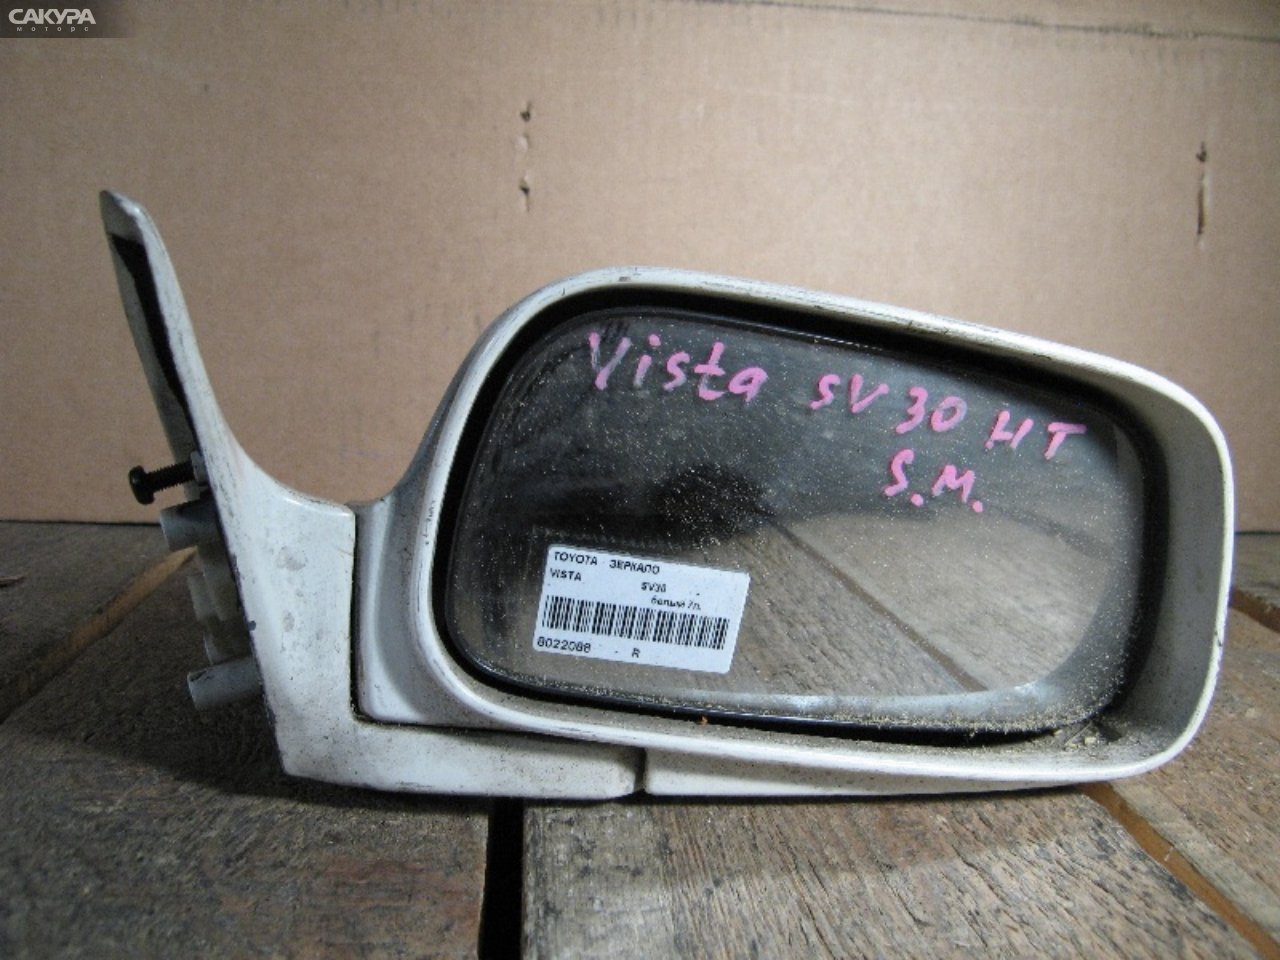 Зеркало боковое правое Toyota Vista SV30: купить в Сакура Абакан.